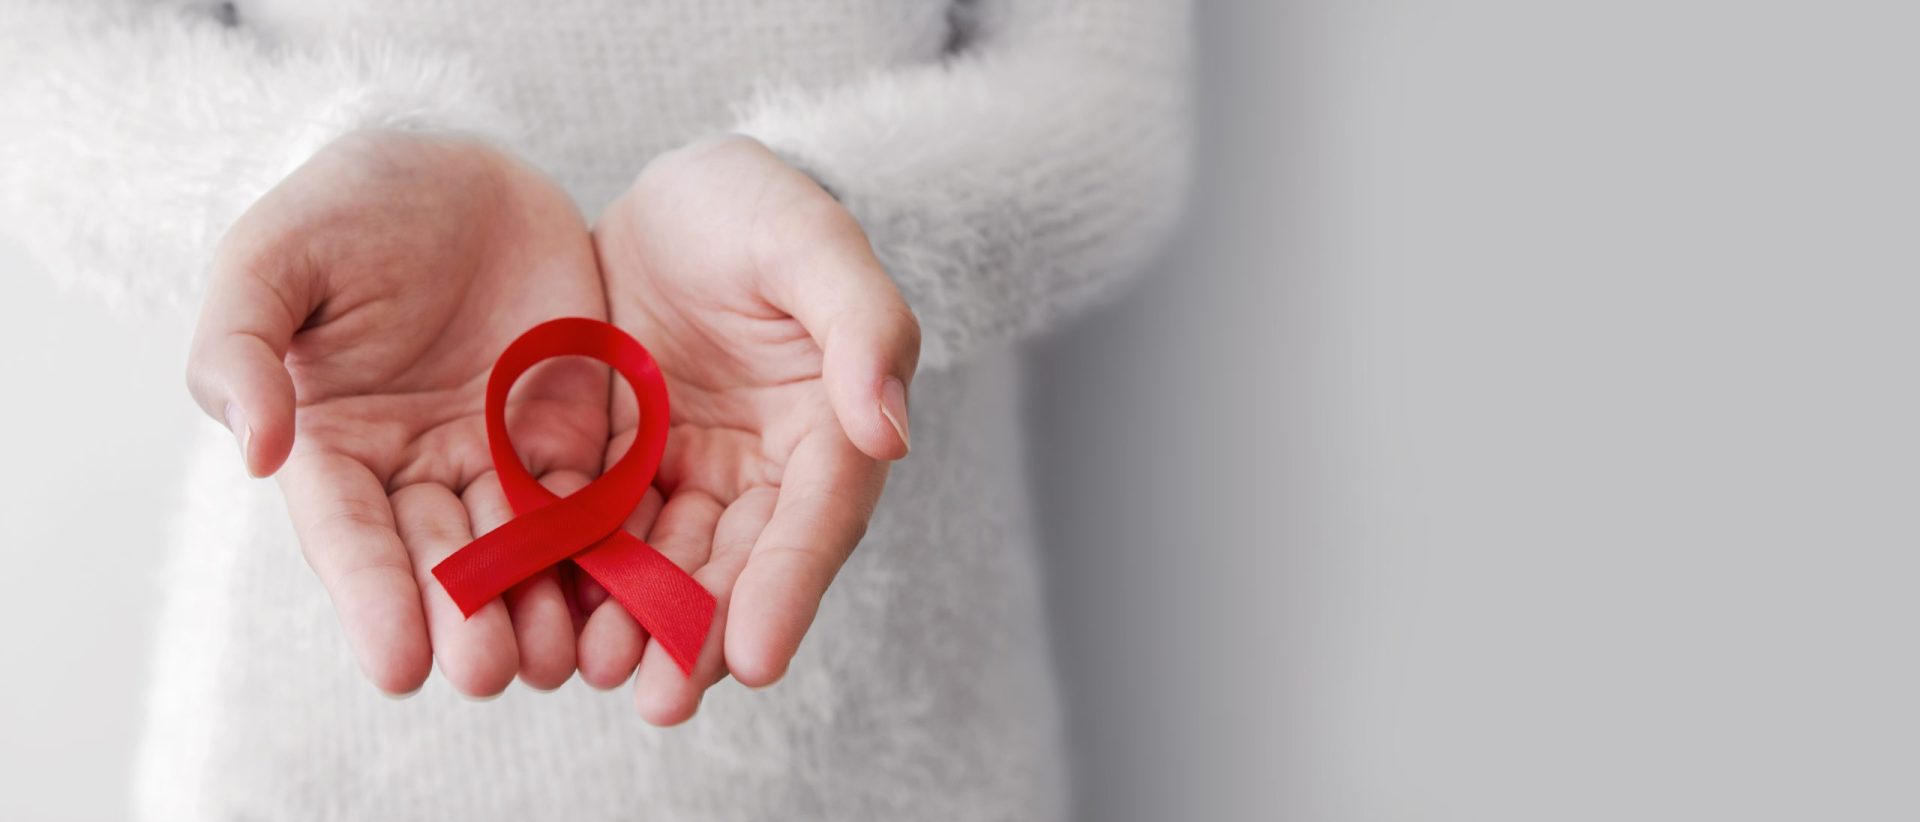 Lisboa lança campanha para aumentar conhecimento sobre a doença da sida